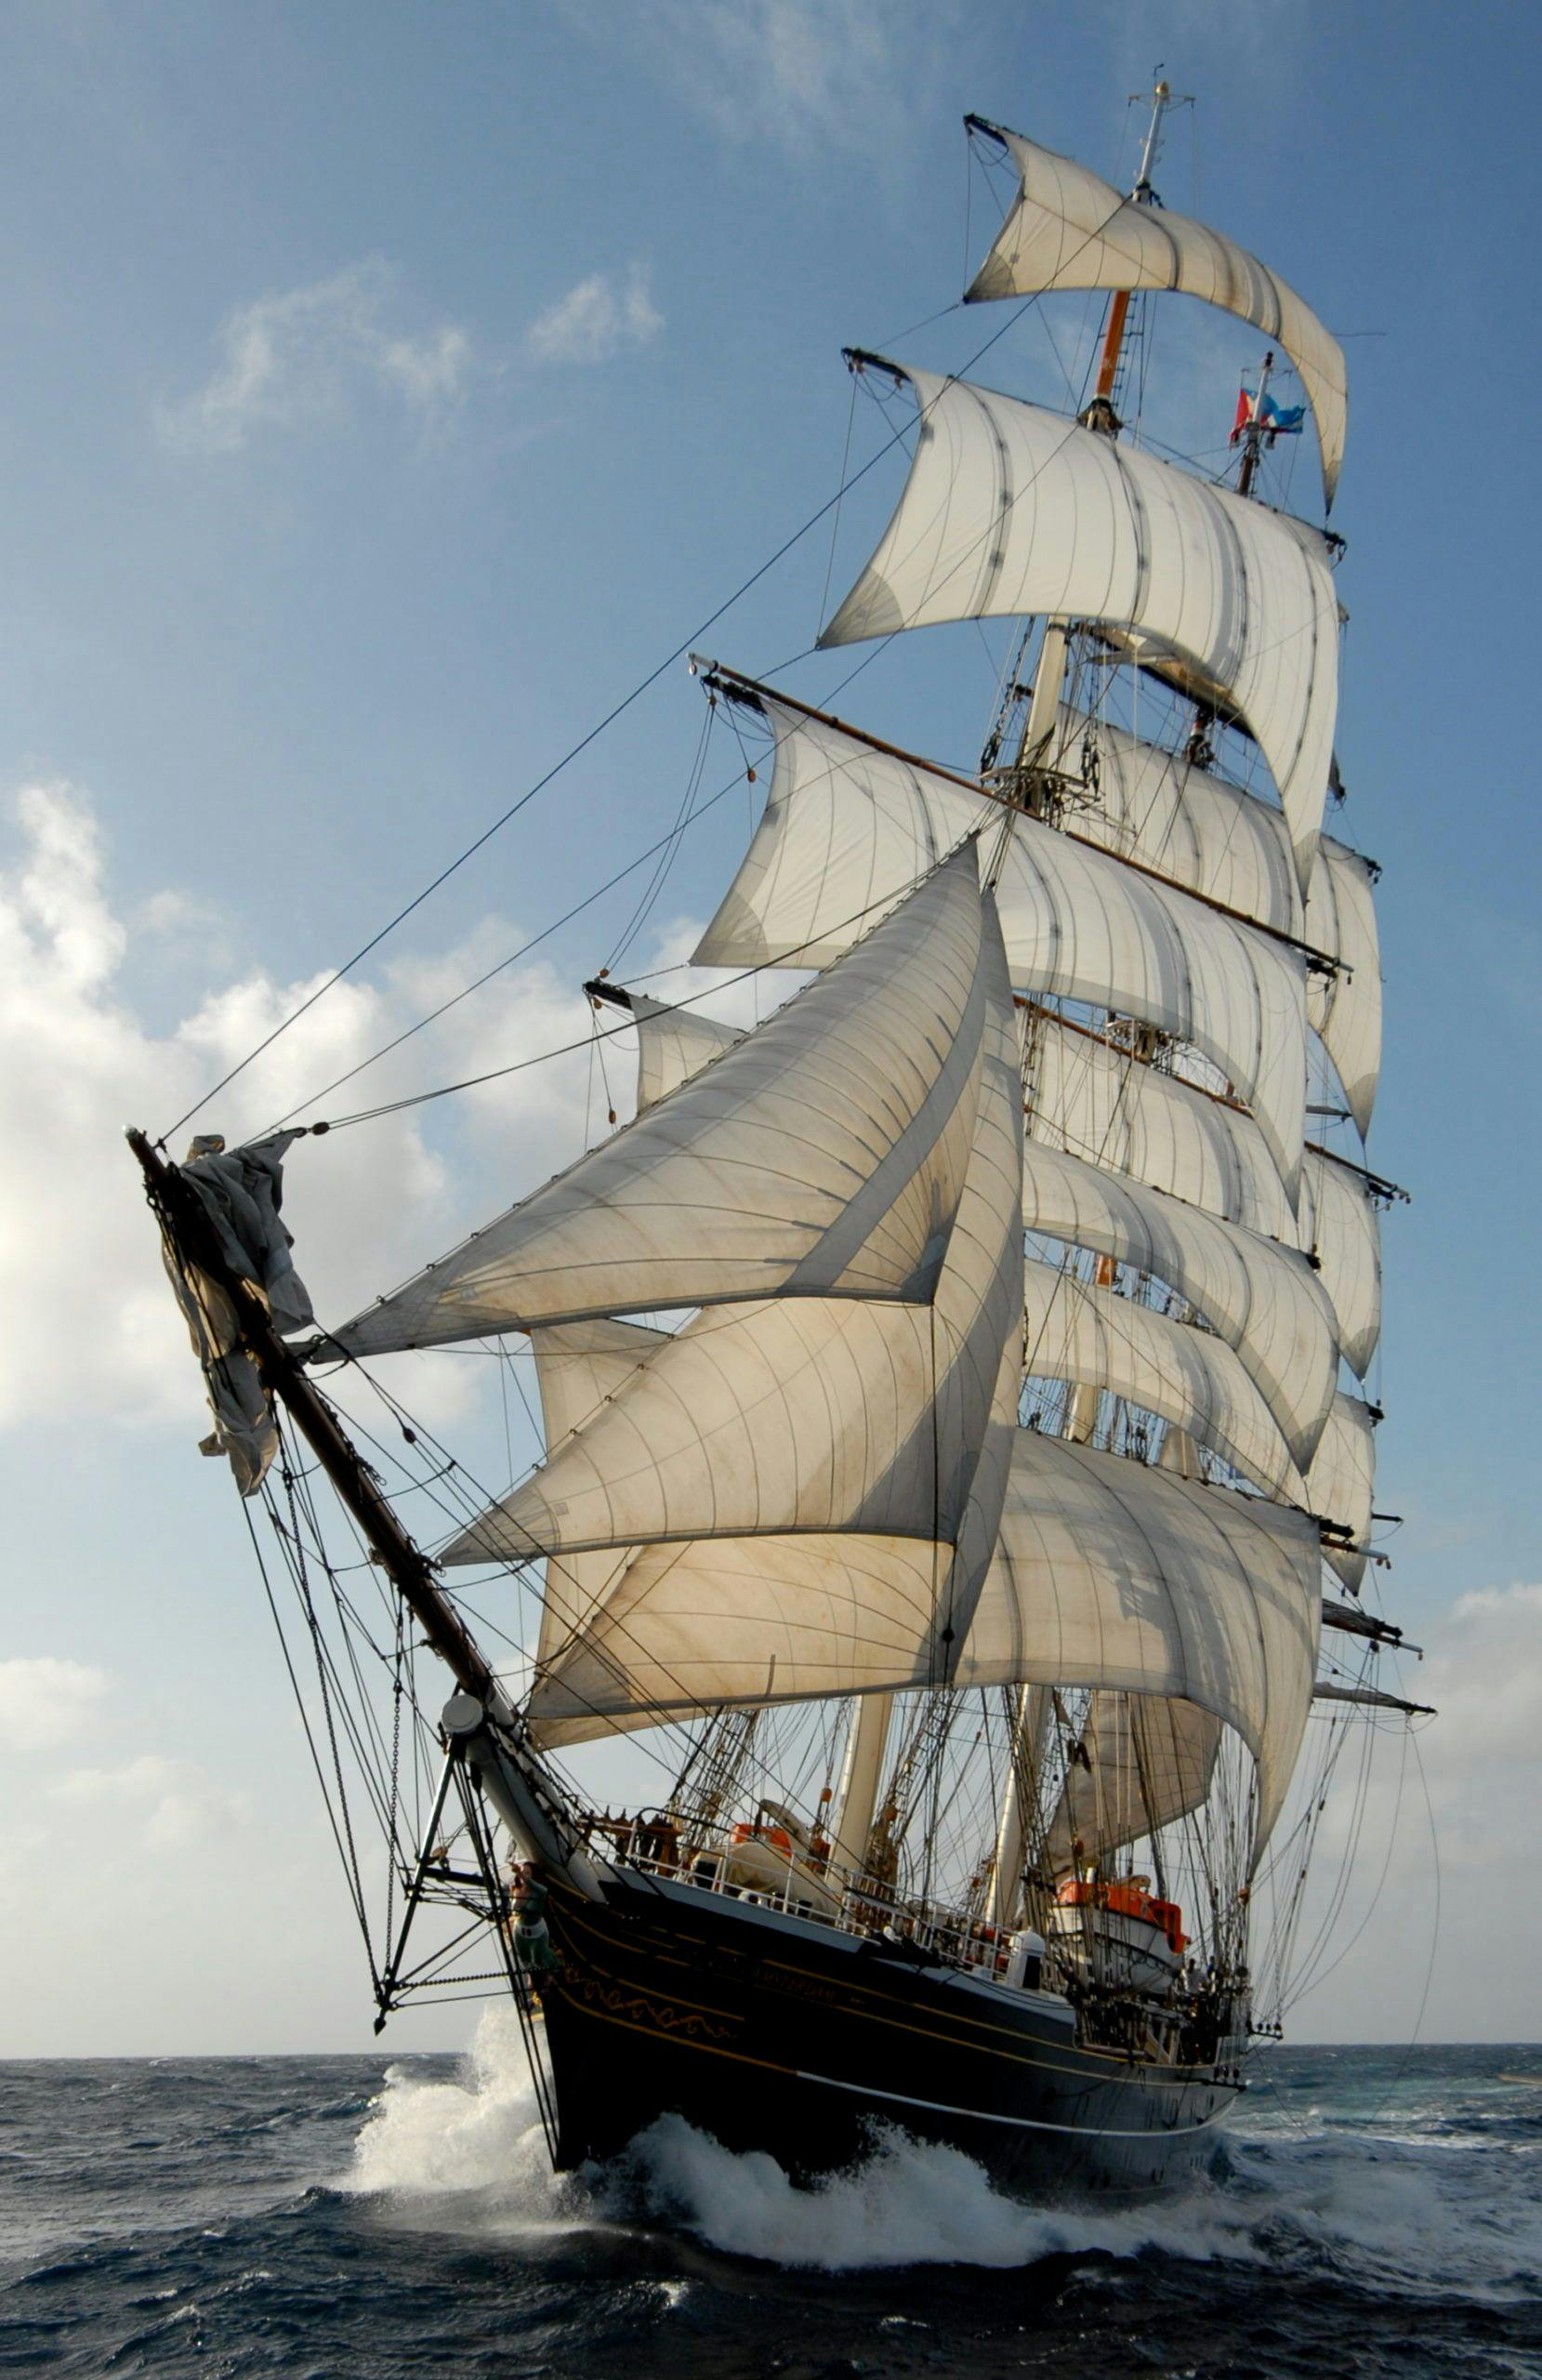 De clipper Stad Amsterdam vaart door de zee terwijl de golven tegen de boot slaan